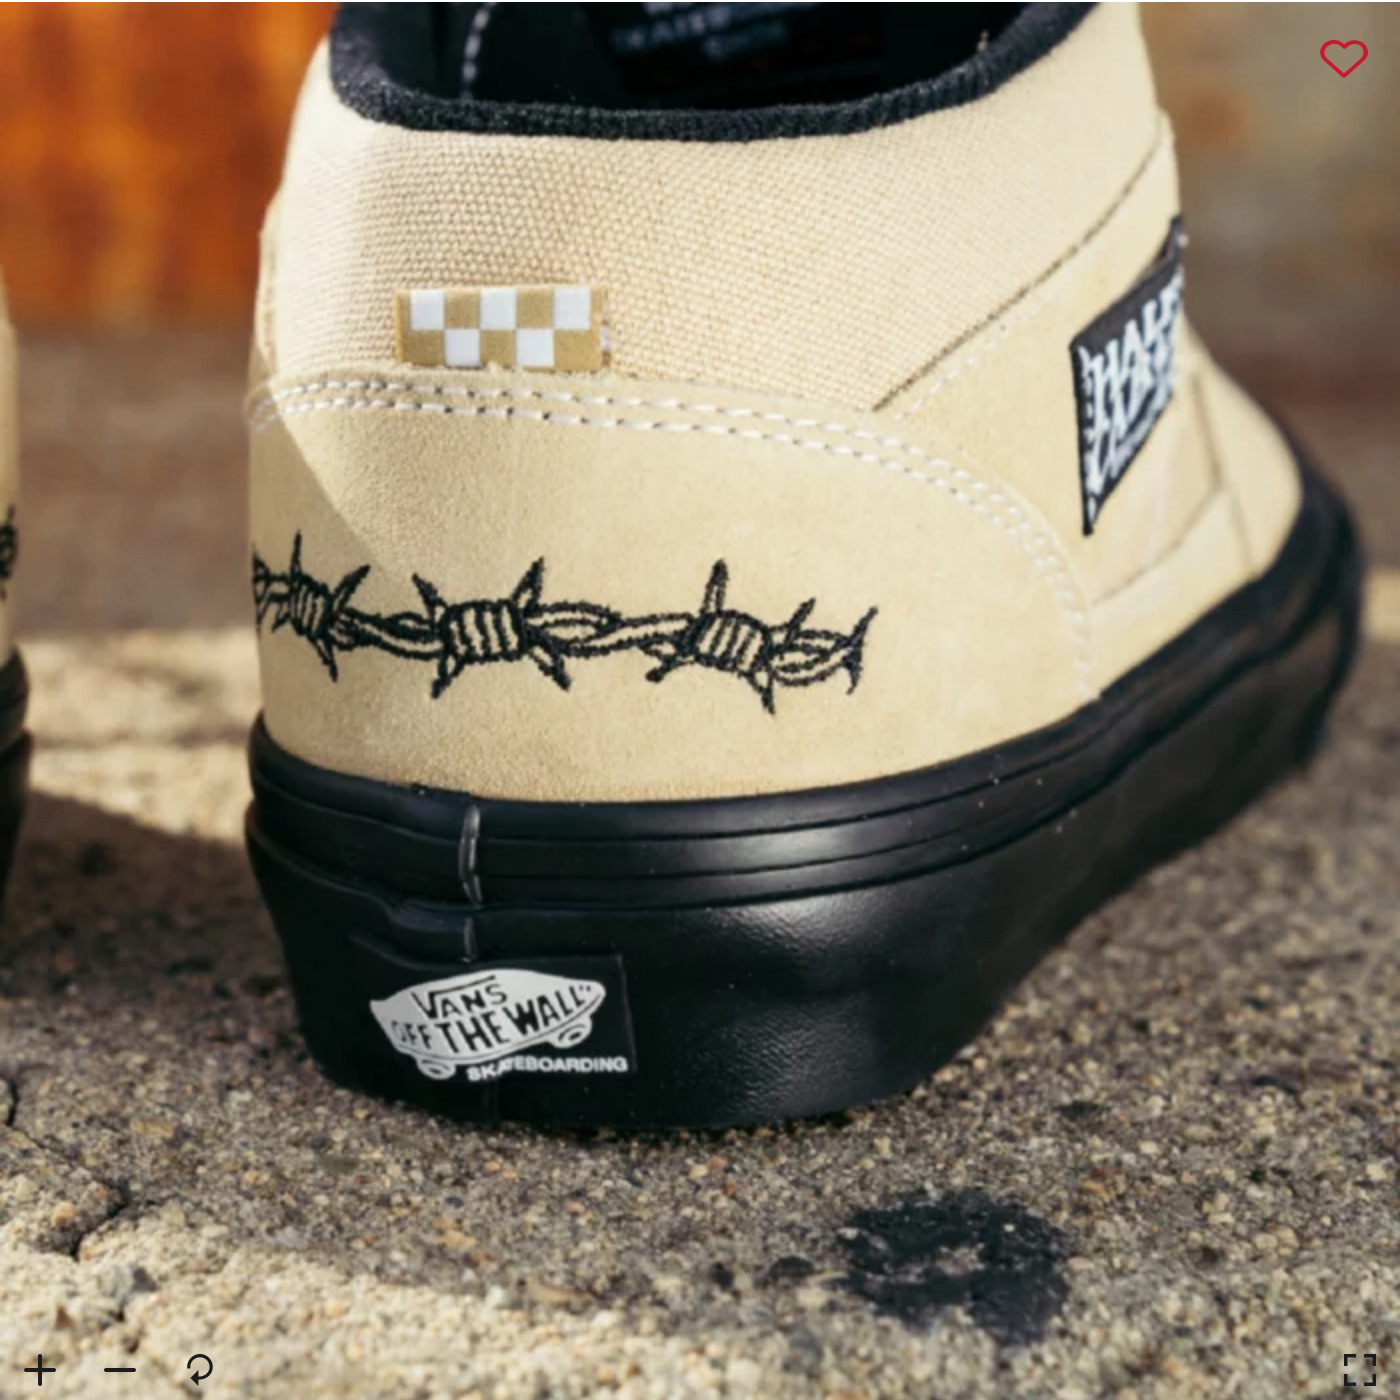 Vans Shoes Skate Half Cab Berle Khaki/Black